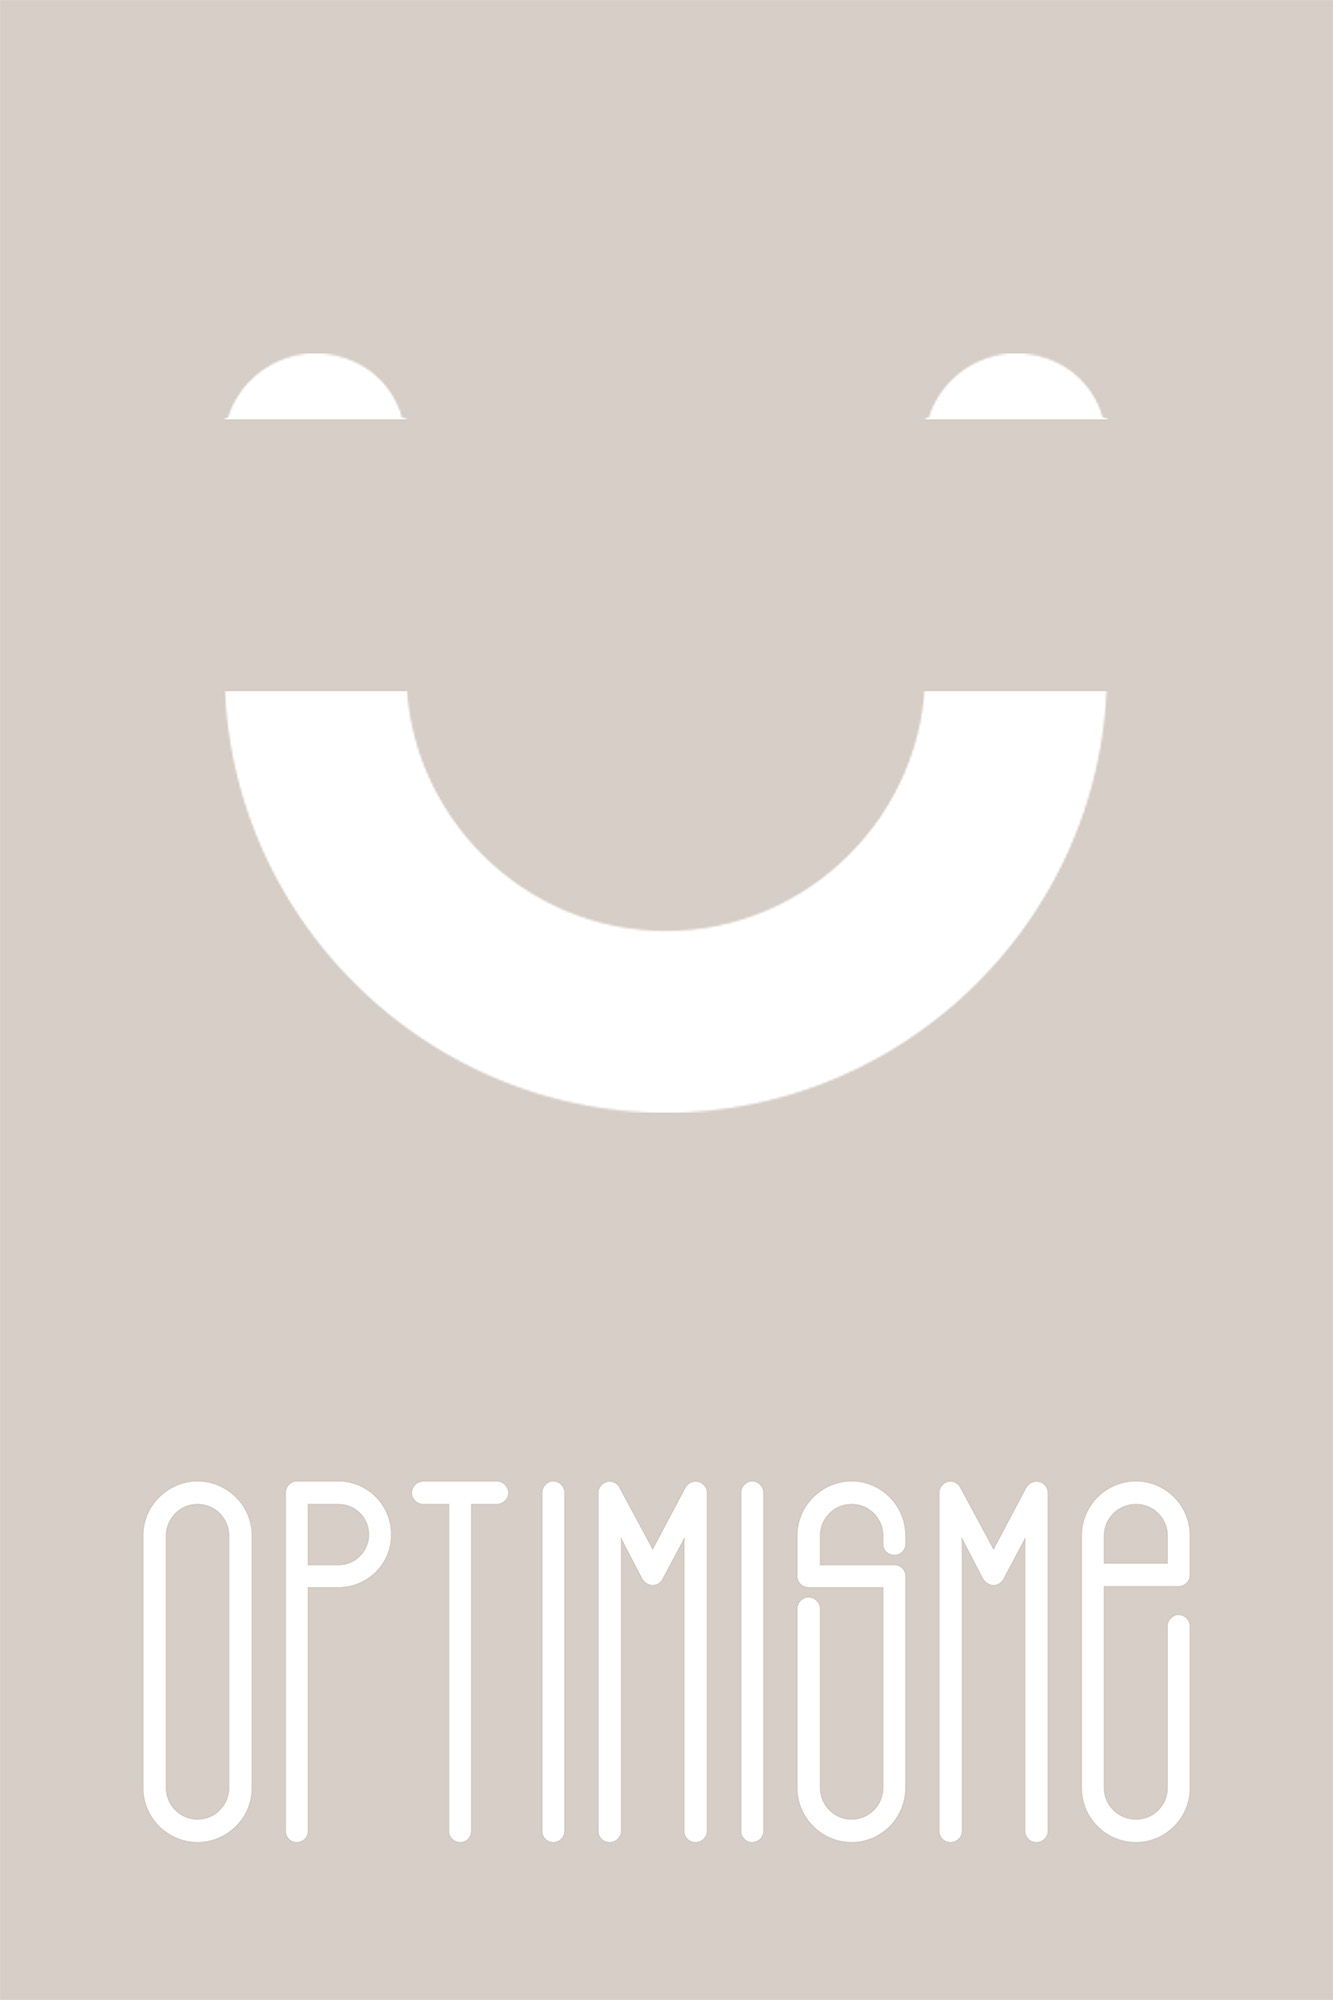 Optimisme_40x60cm